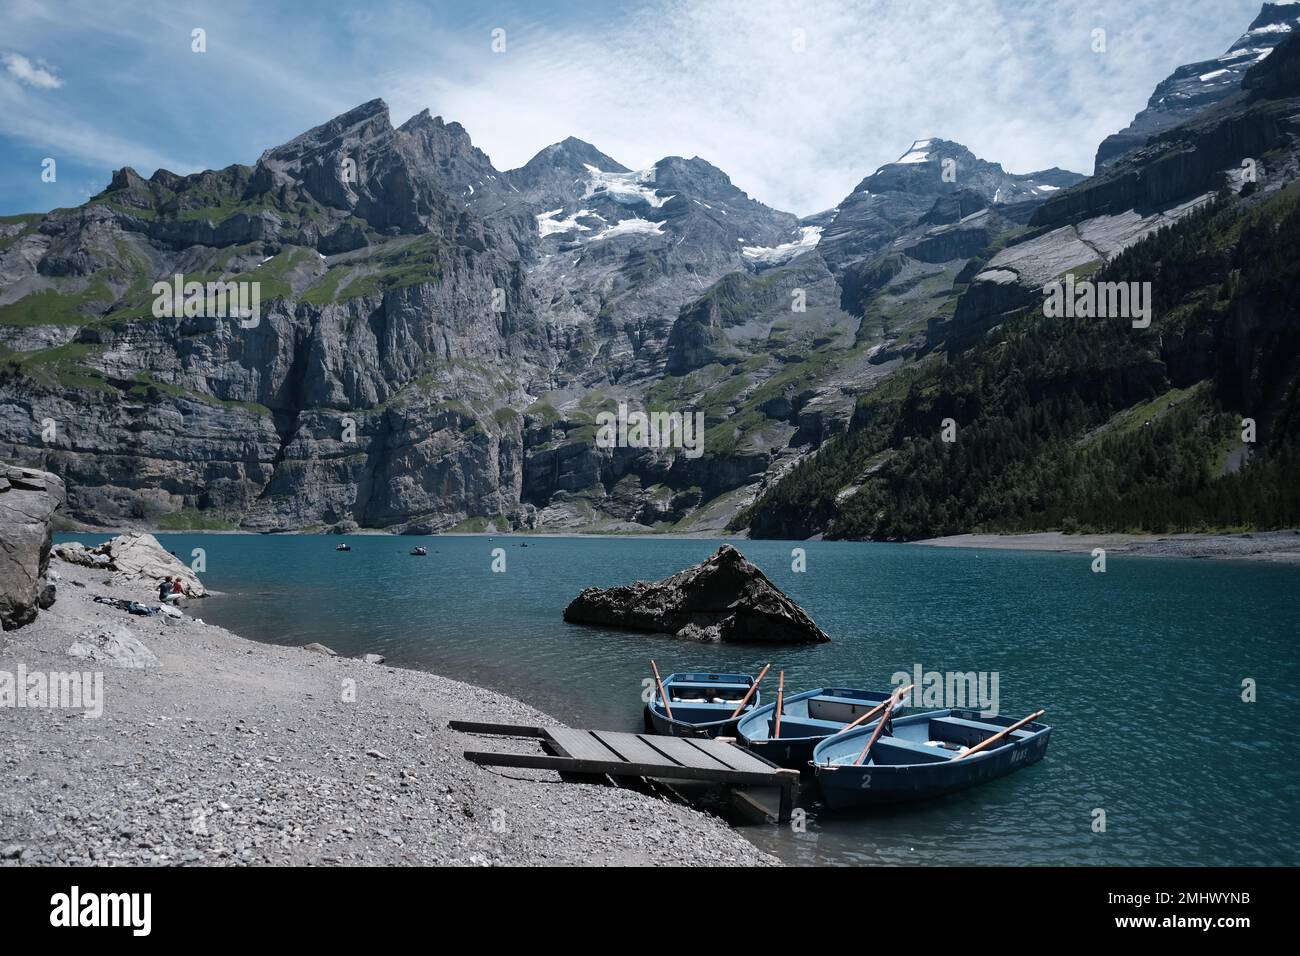 Una bella foto di kayak blu su una costa del lago circondata da colline rocciose Foto Stock